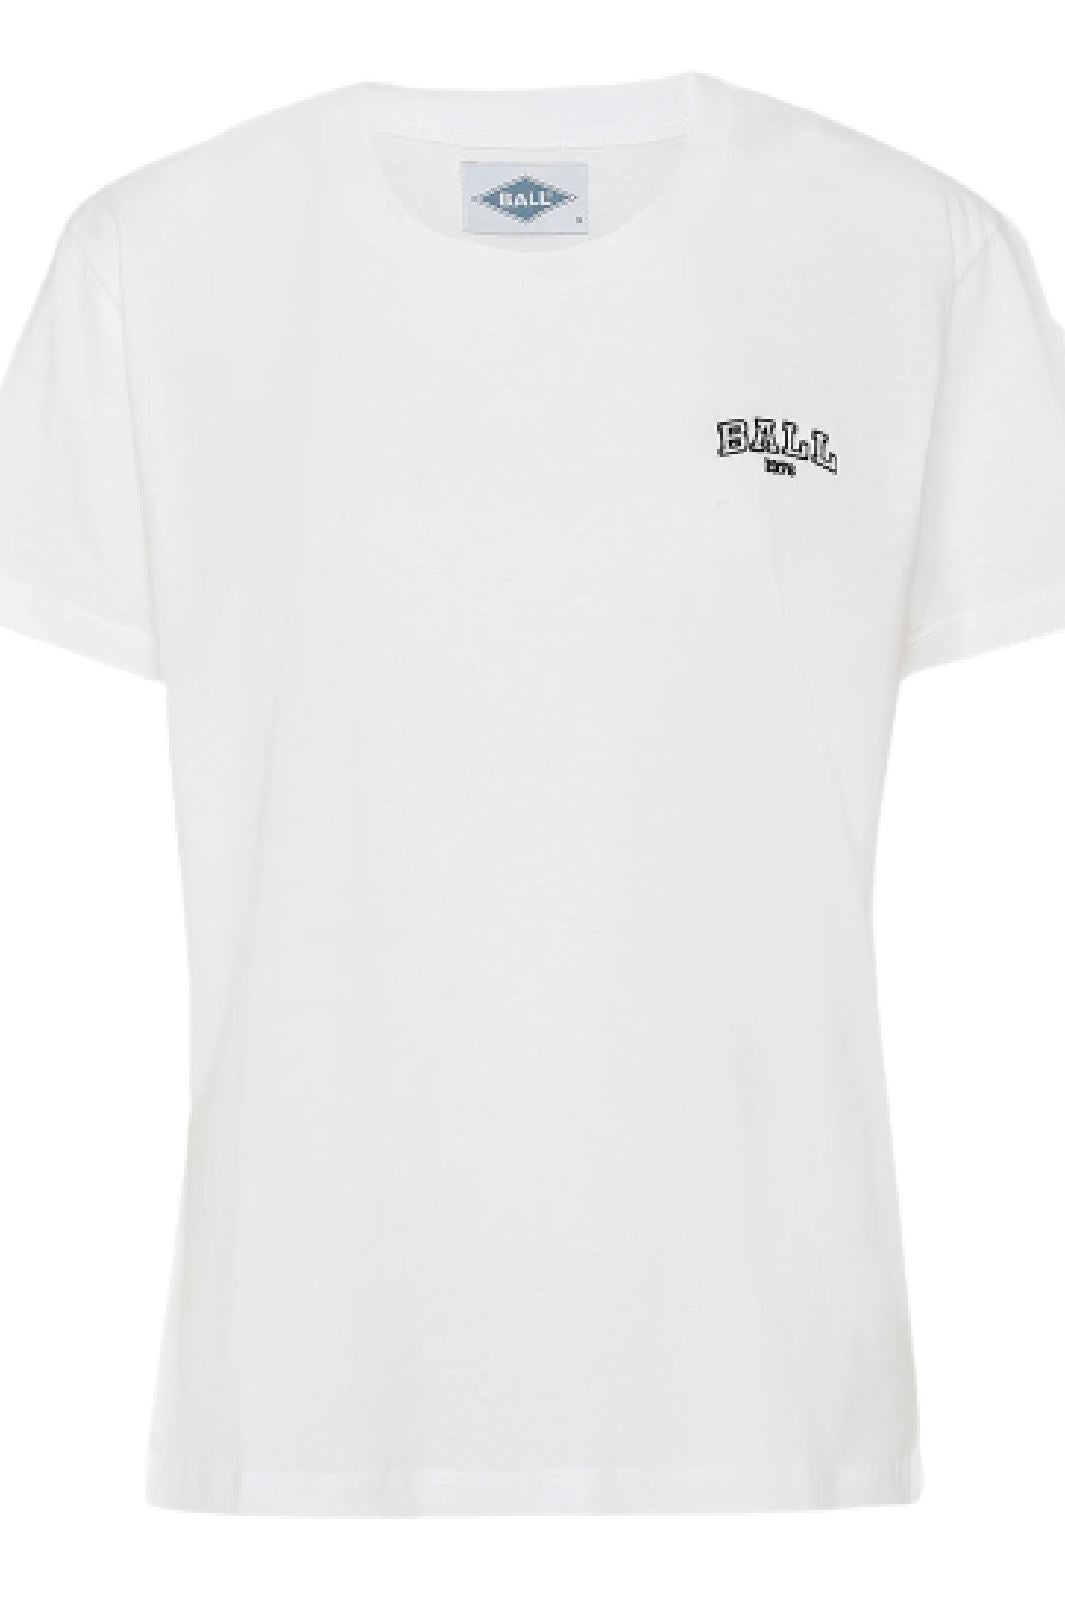 Ball - T. Little T-shirt - White T-shirts 